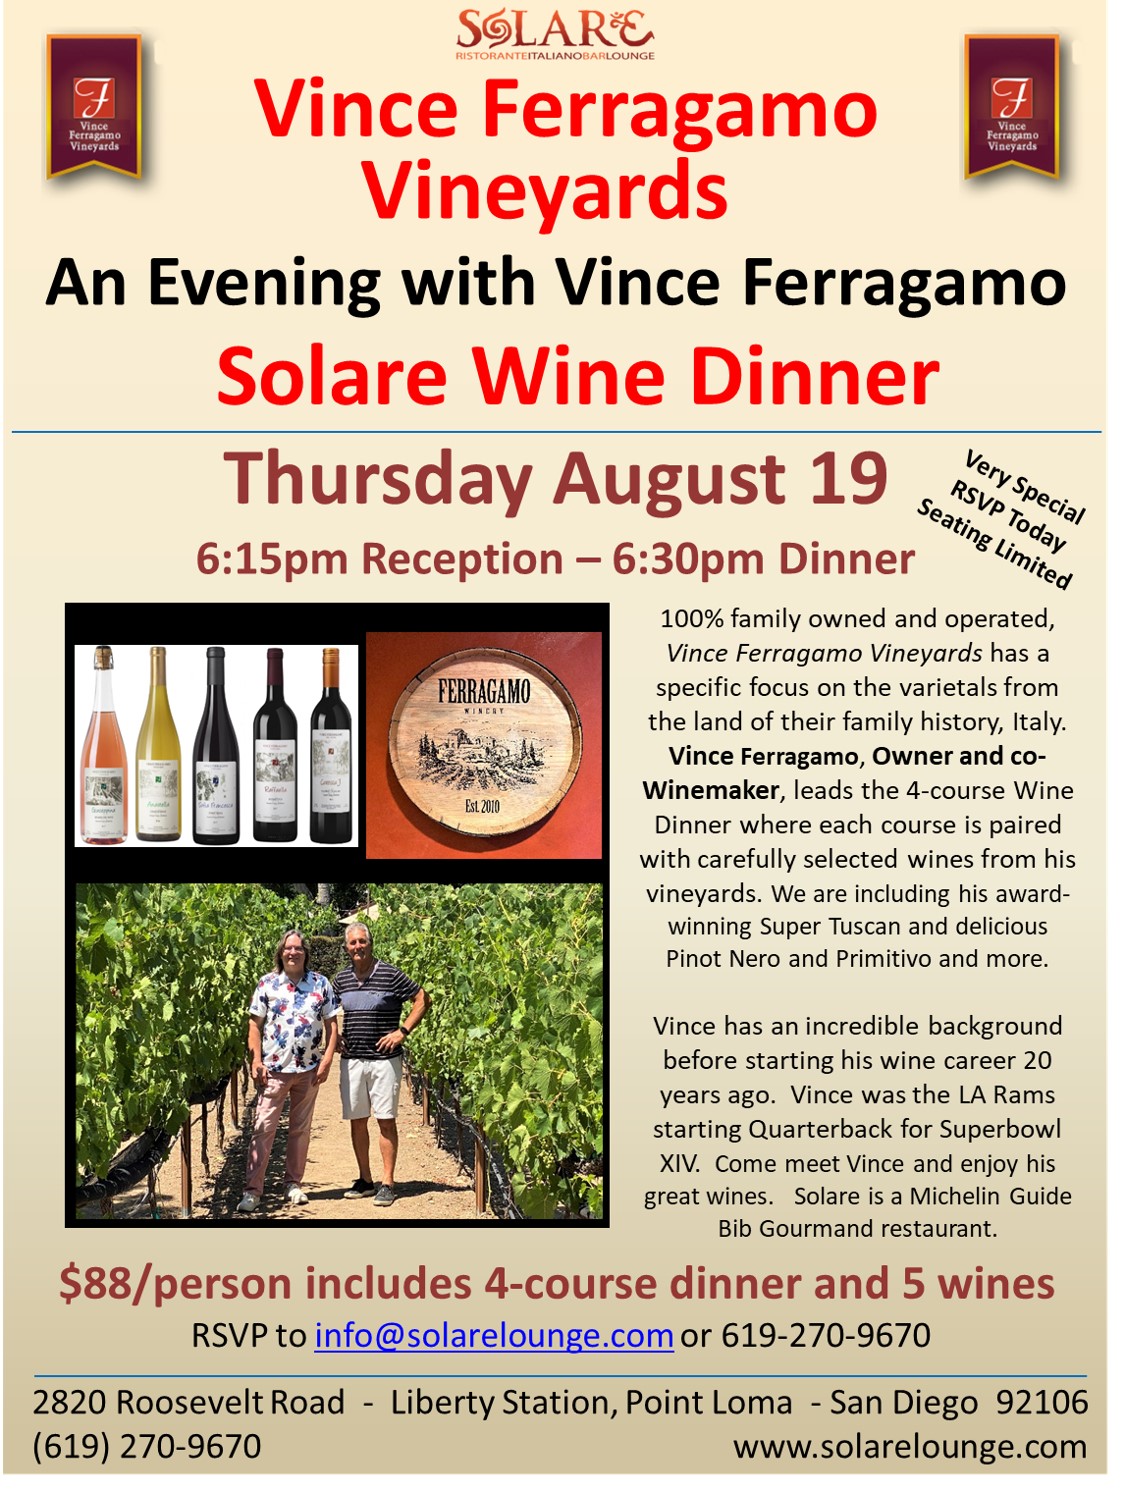 <a id="Solare-Vince-Ferragamo-Wine-Dinner"></a>Solare Wine Dinner with Vince Ferragamo Vineyards